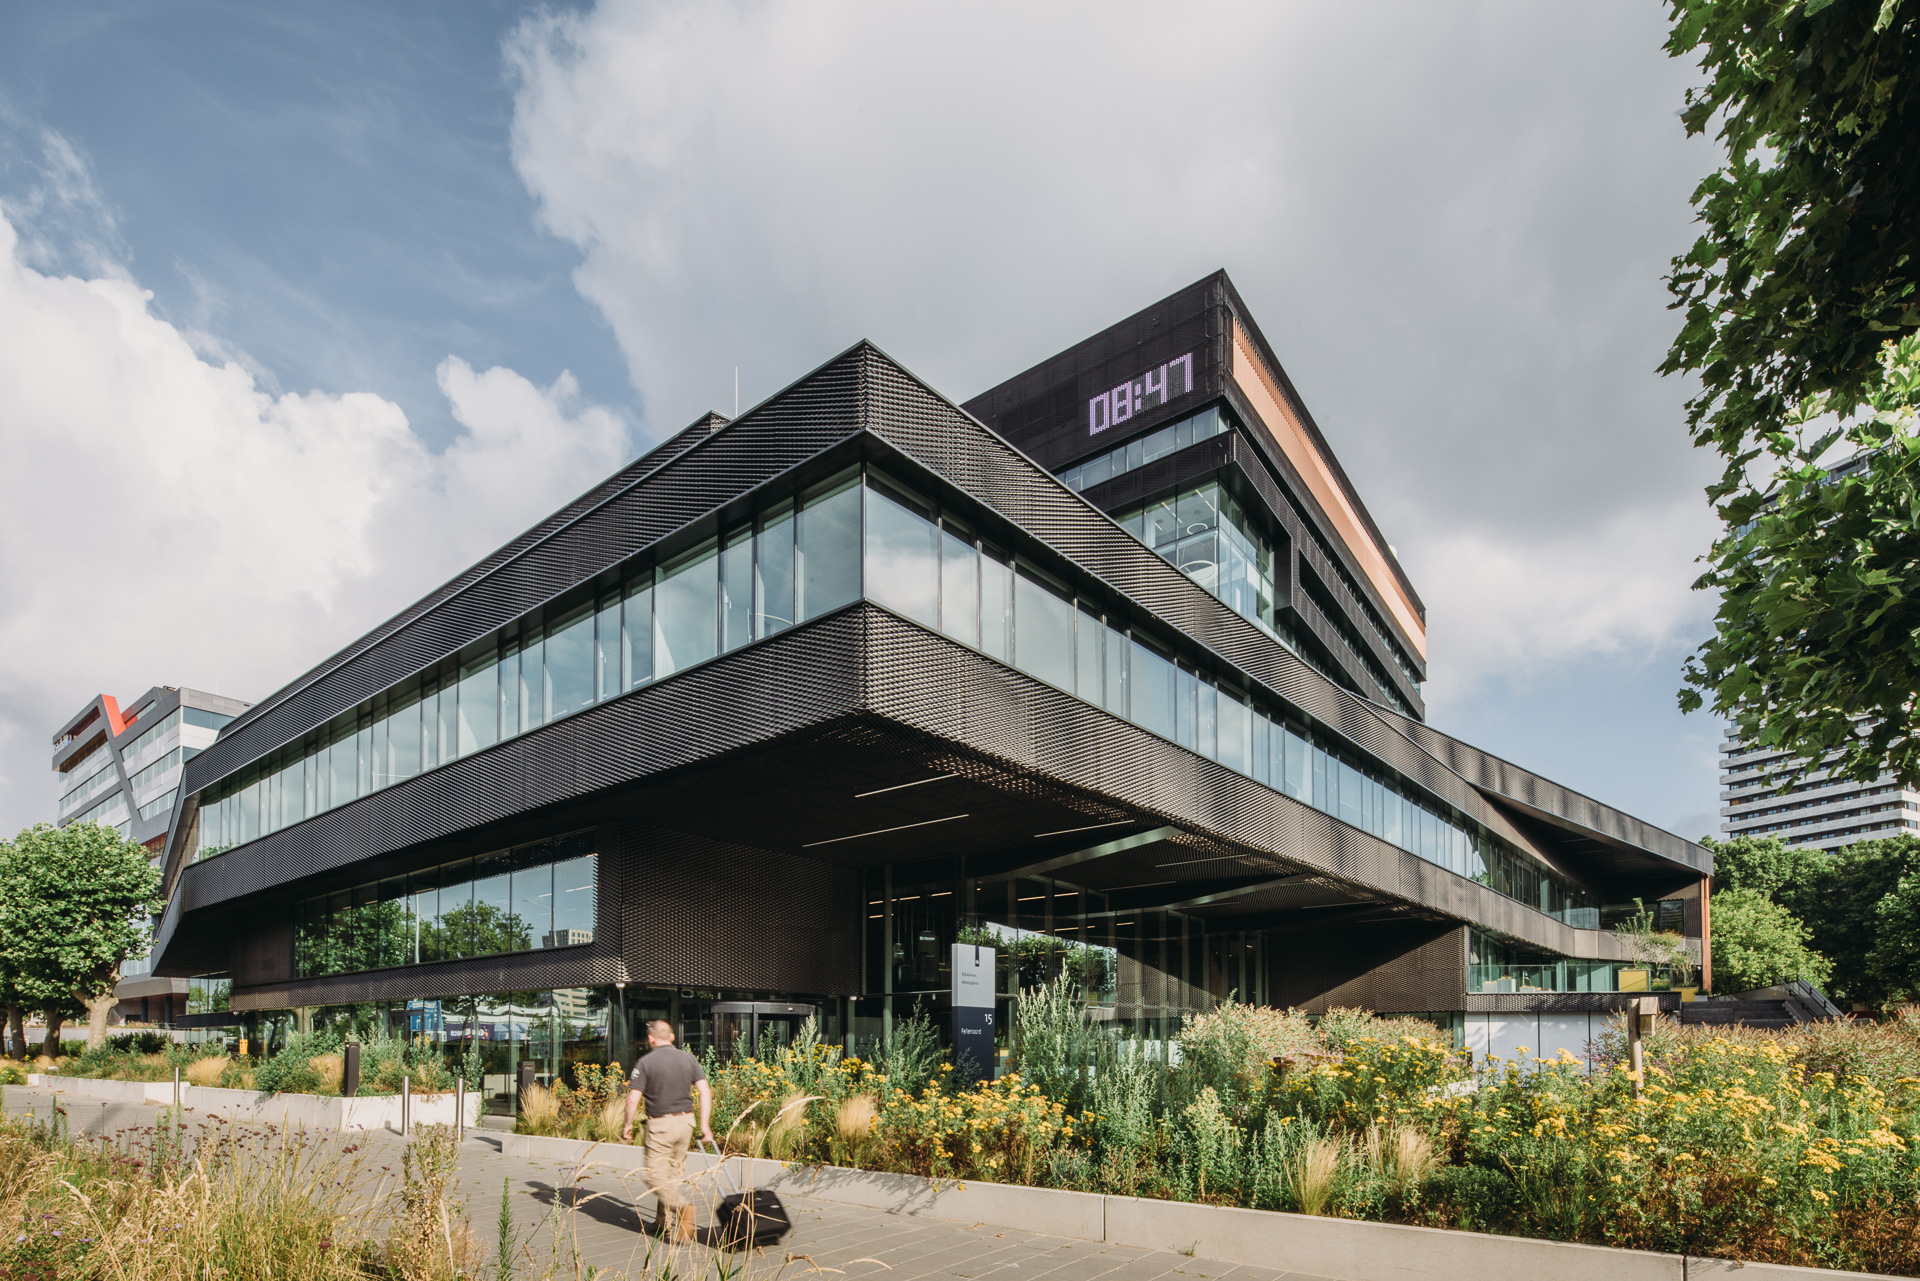 媒体发布 | 传统大楼到面向未来的办公场所的蜕变-UNStudio完成了荷兰一个原银行总部大楼的翻新改造